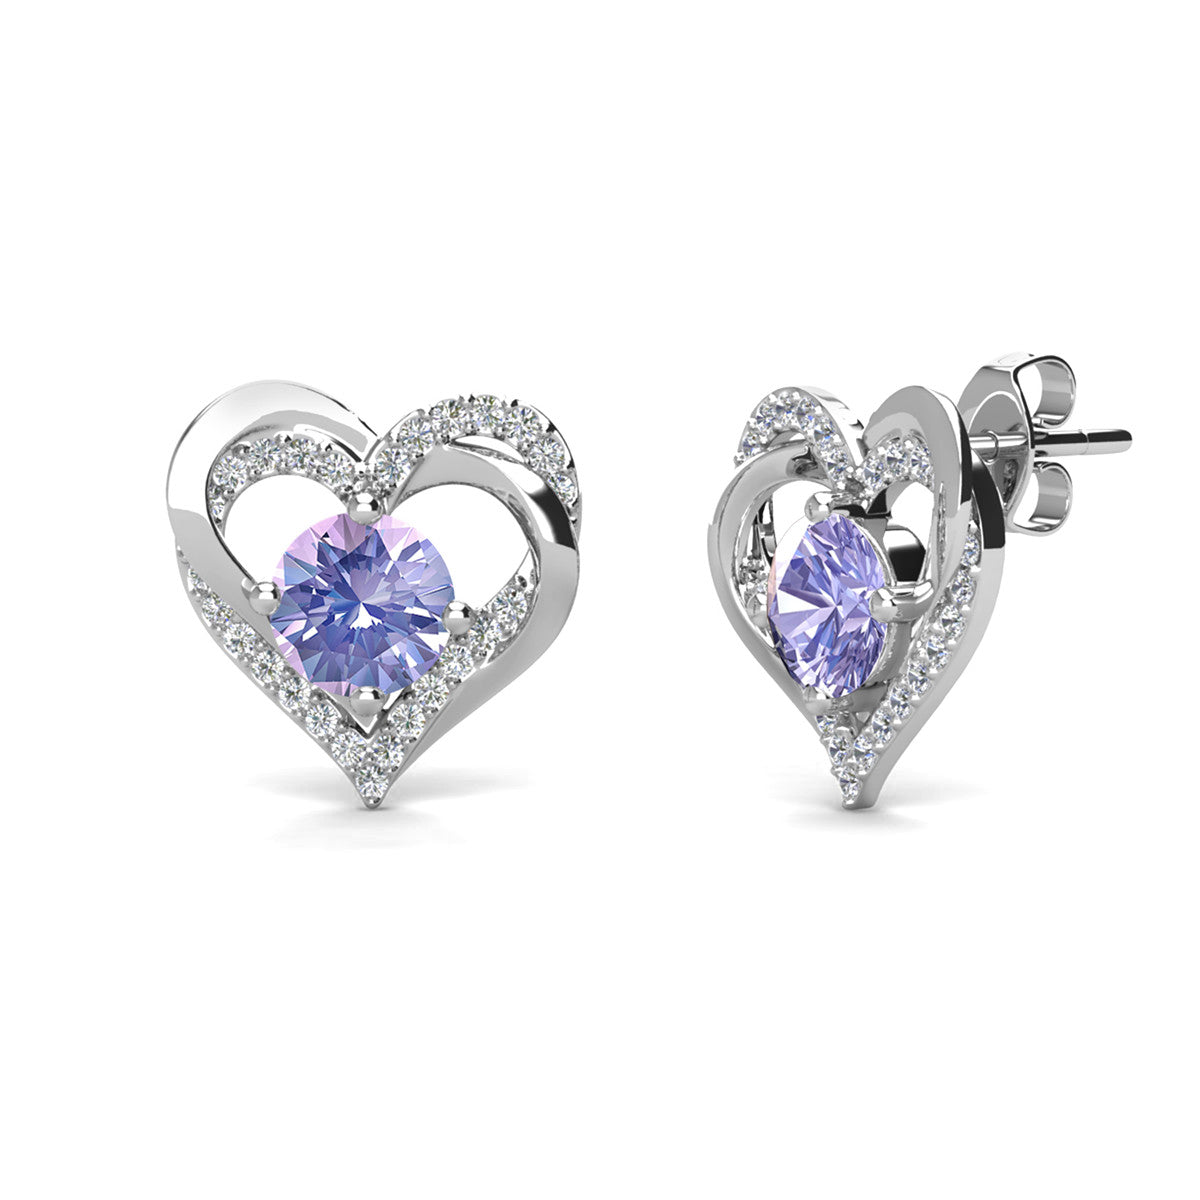 Forever June Birthstone Alexandrite Earrings, 18k White Gold Plated Silver Double Heart Crystal Earrings